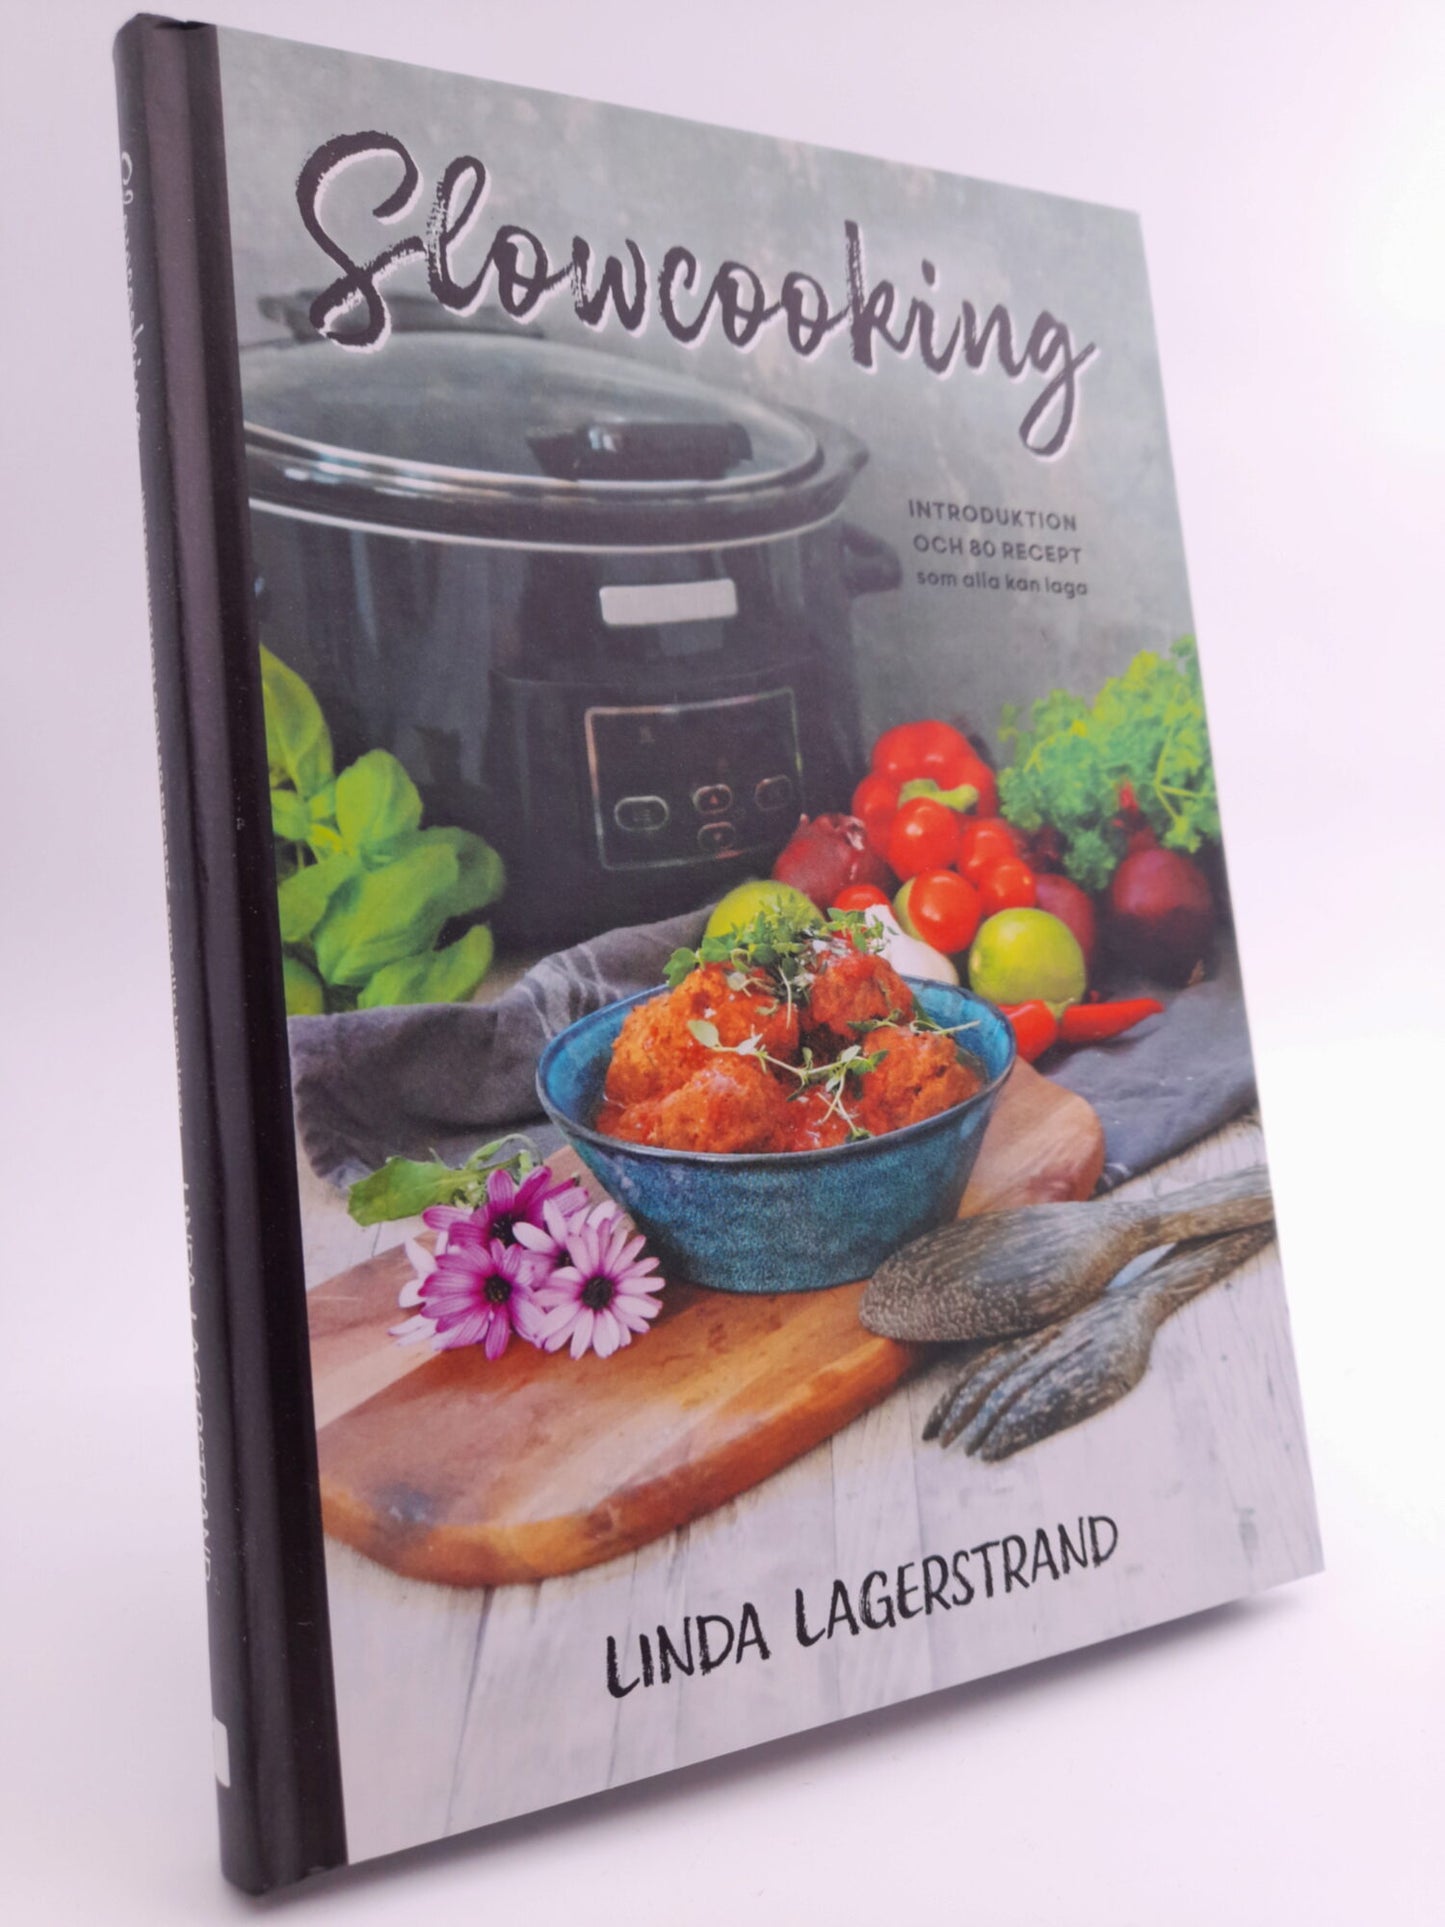 Lagerstrand, Linda | Slowcooking : Introduktion och 80 recept som alla kan laga